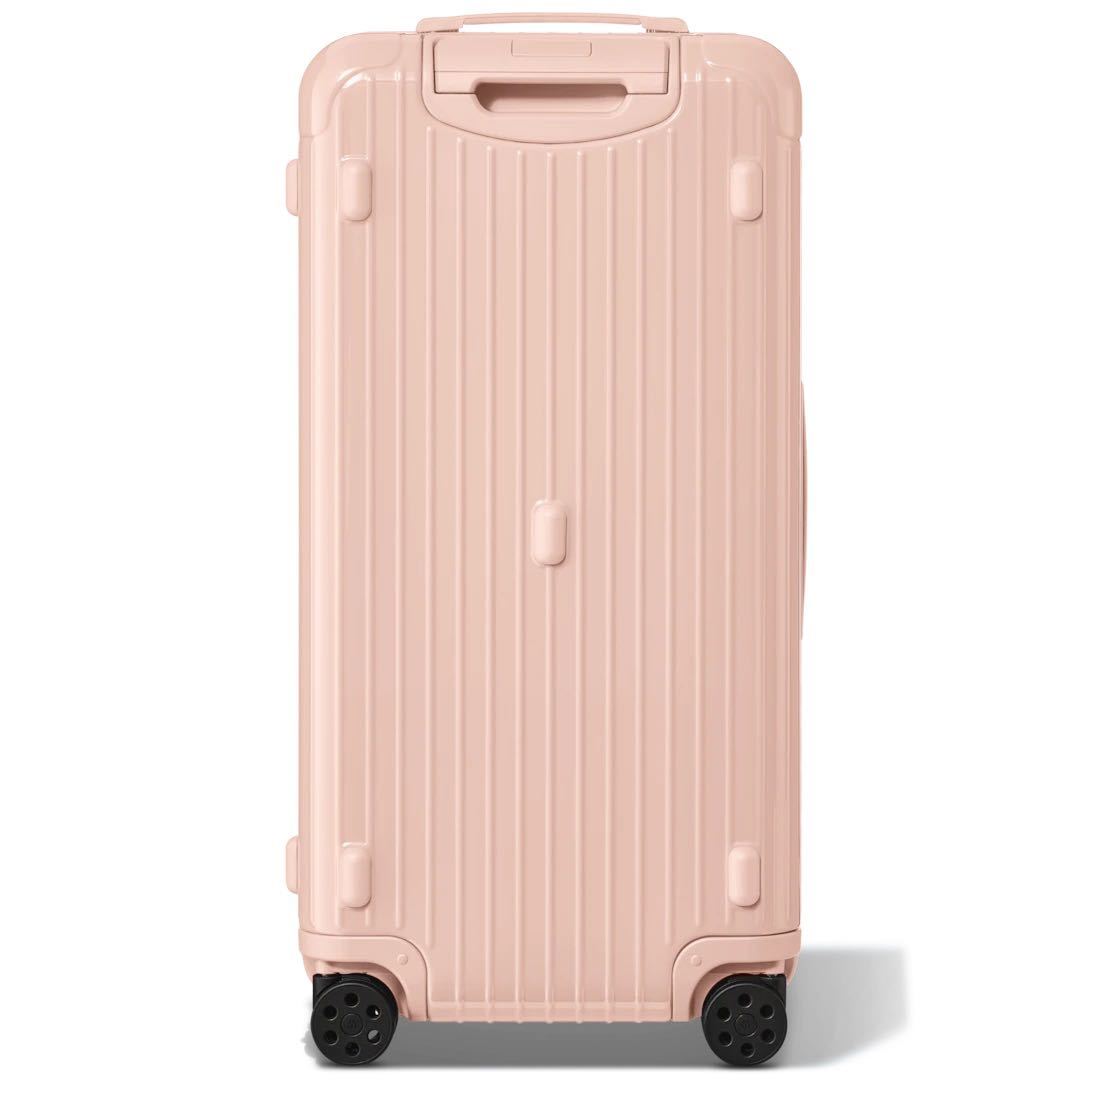 スーツケース – アウトドア・キャンプギアレンタルショップHARI